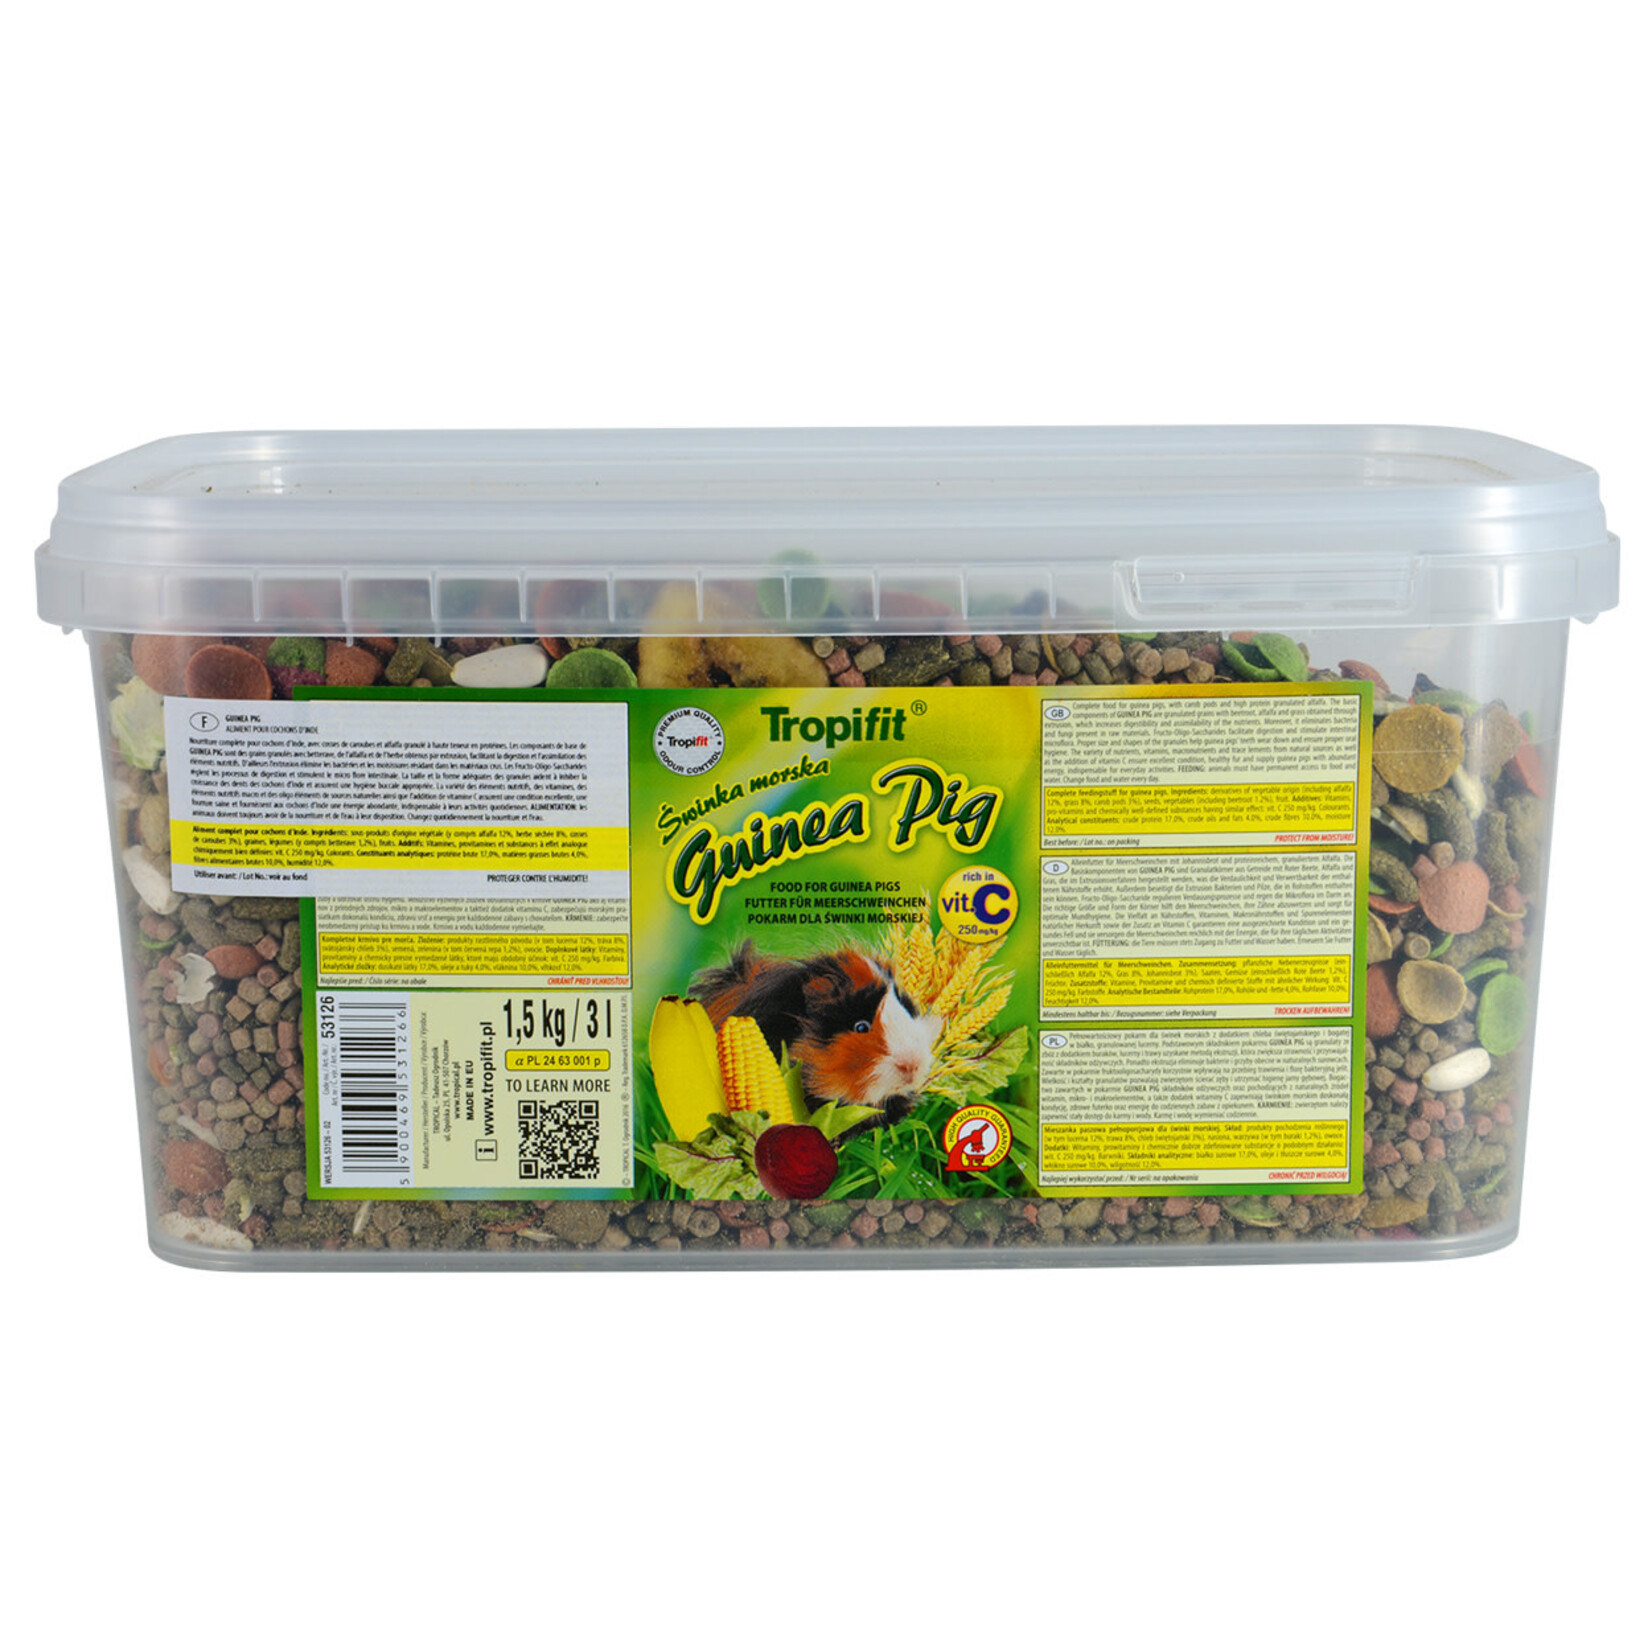 TROPIFIT Tropifit Guinea Pig Food - 1.5 kg - Tub